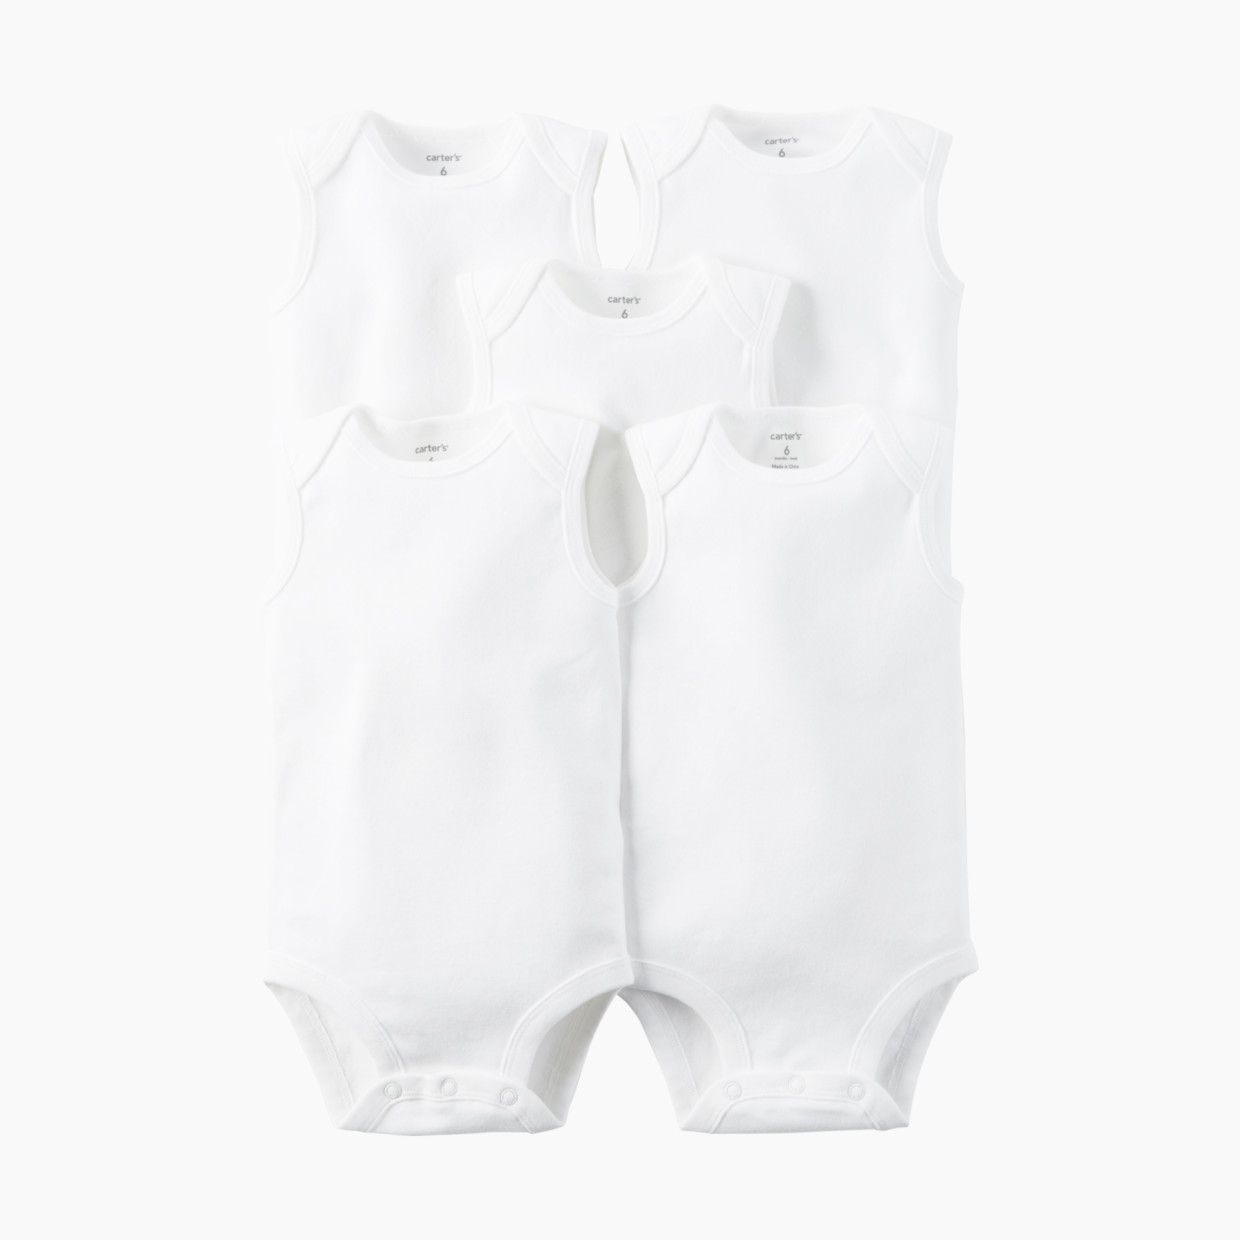 Carter's Sleeveless White Bodysuit (5 Pack) - White, 0-3 Months.